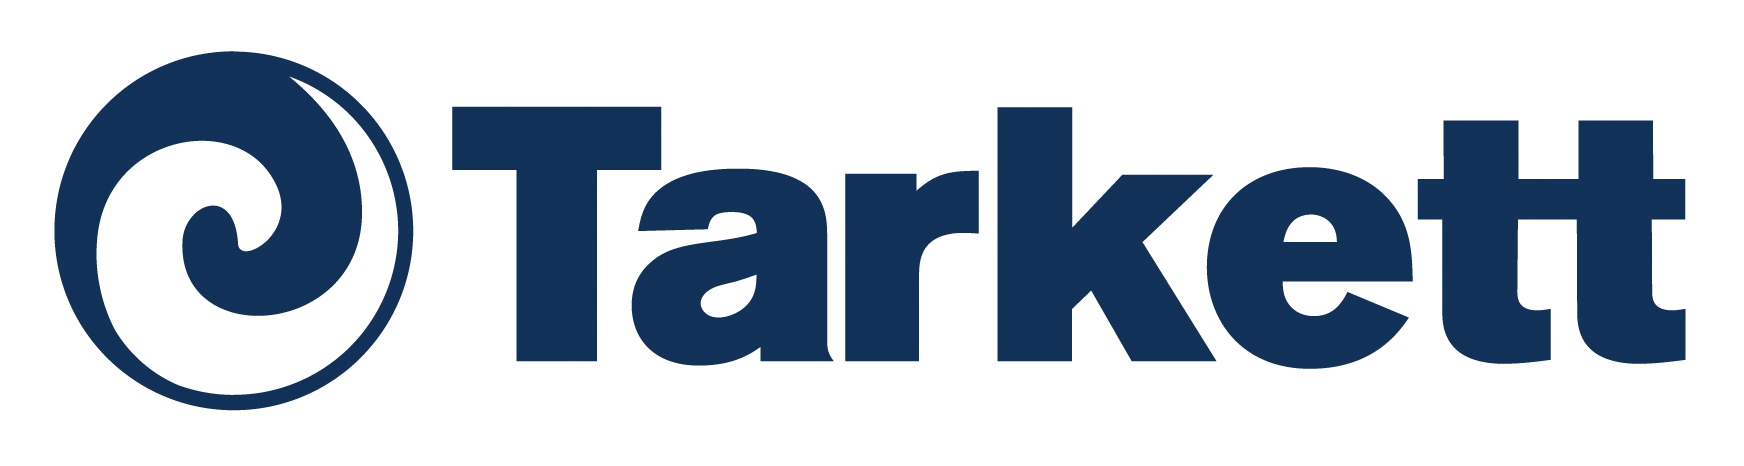 Tarkett-Logo